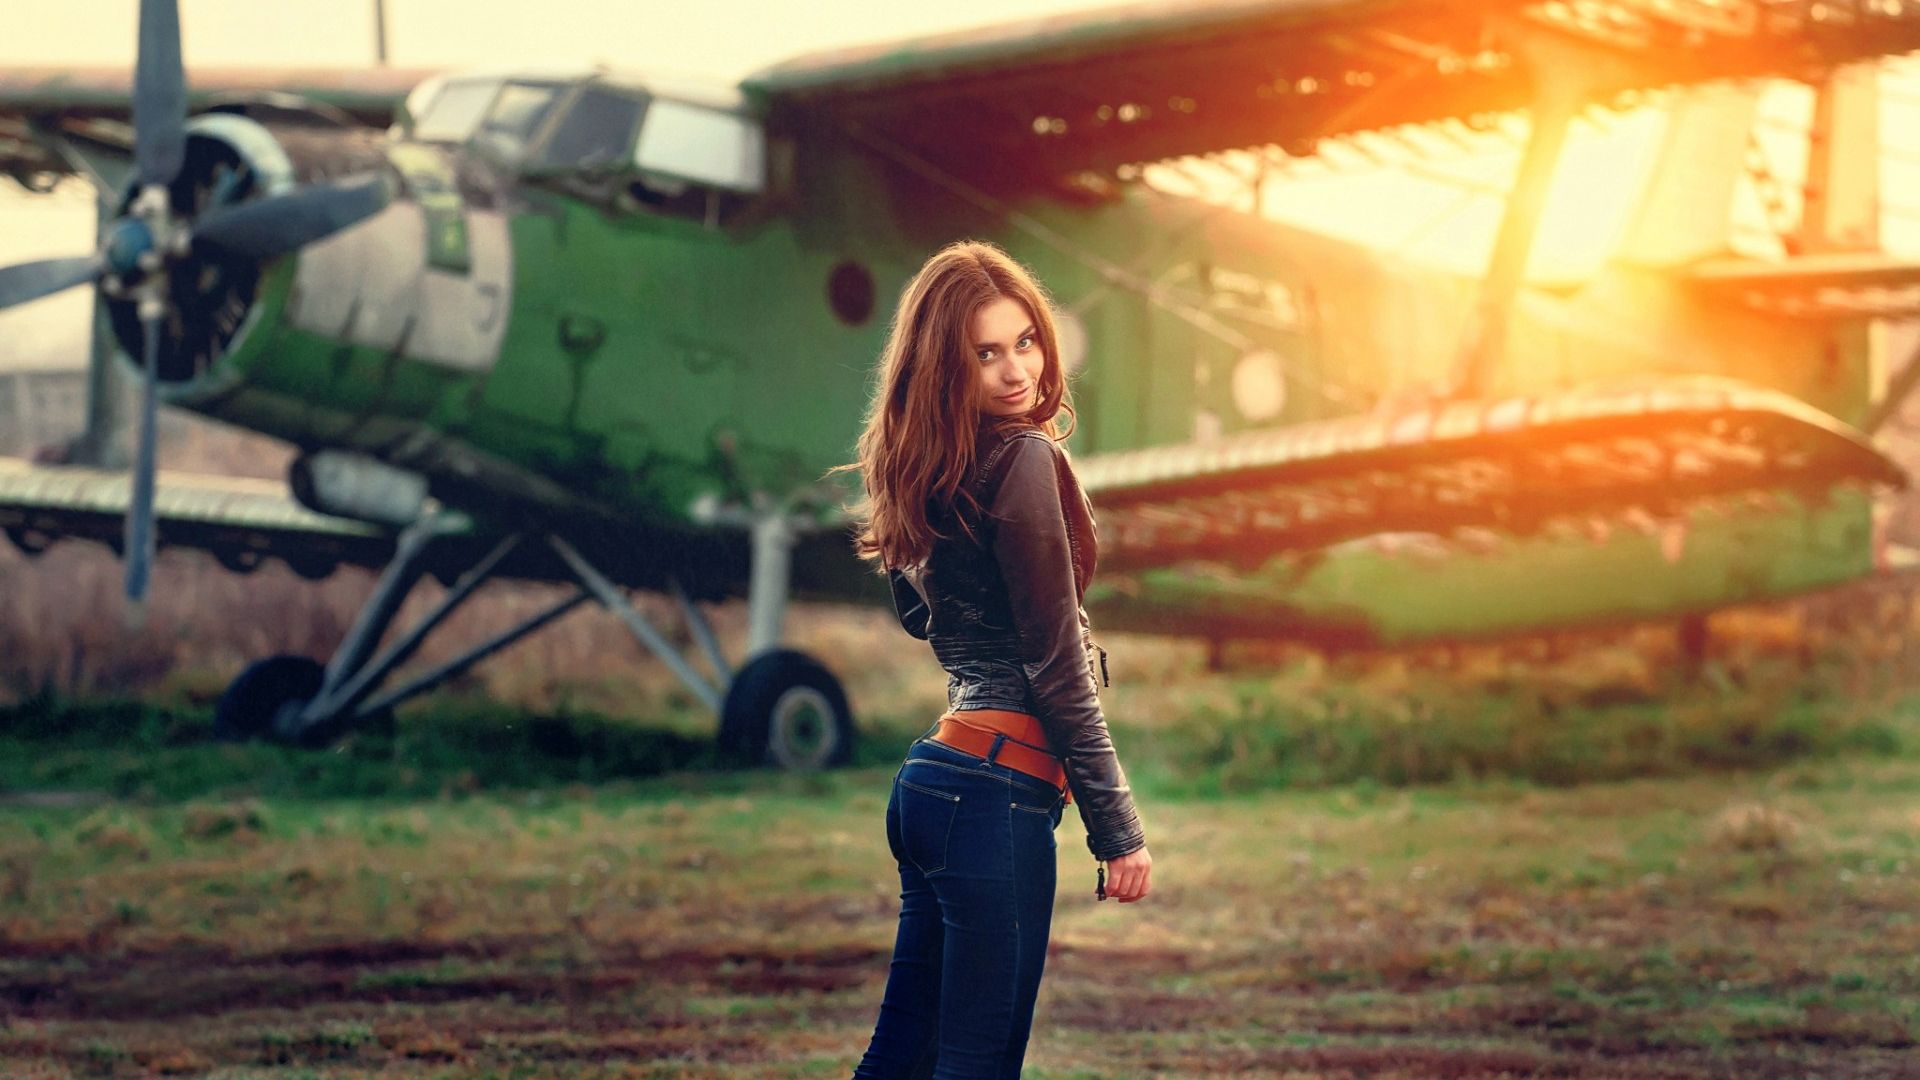 Wallpaper Airplane, girl, sunlight, smile, jeans